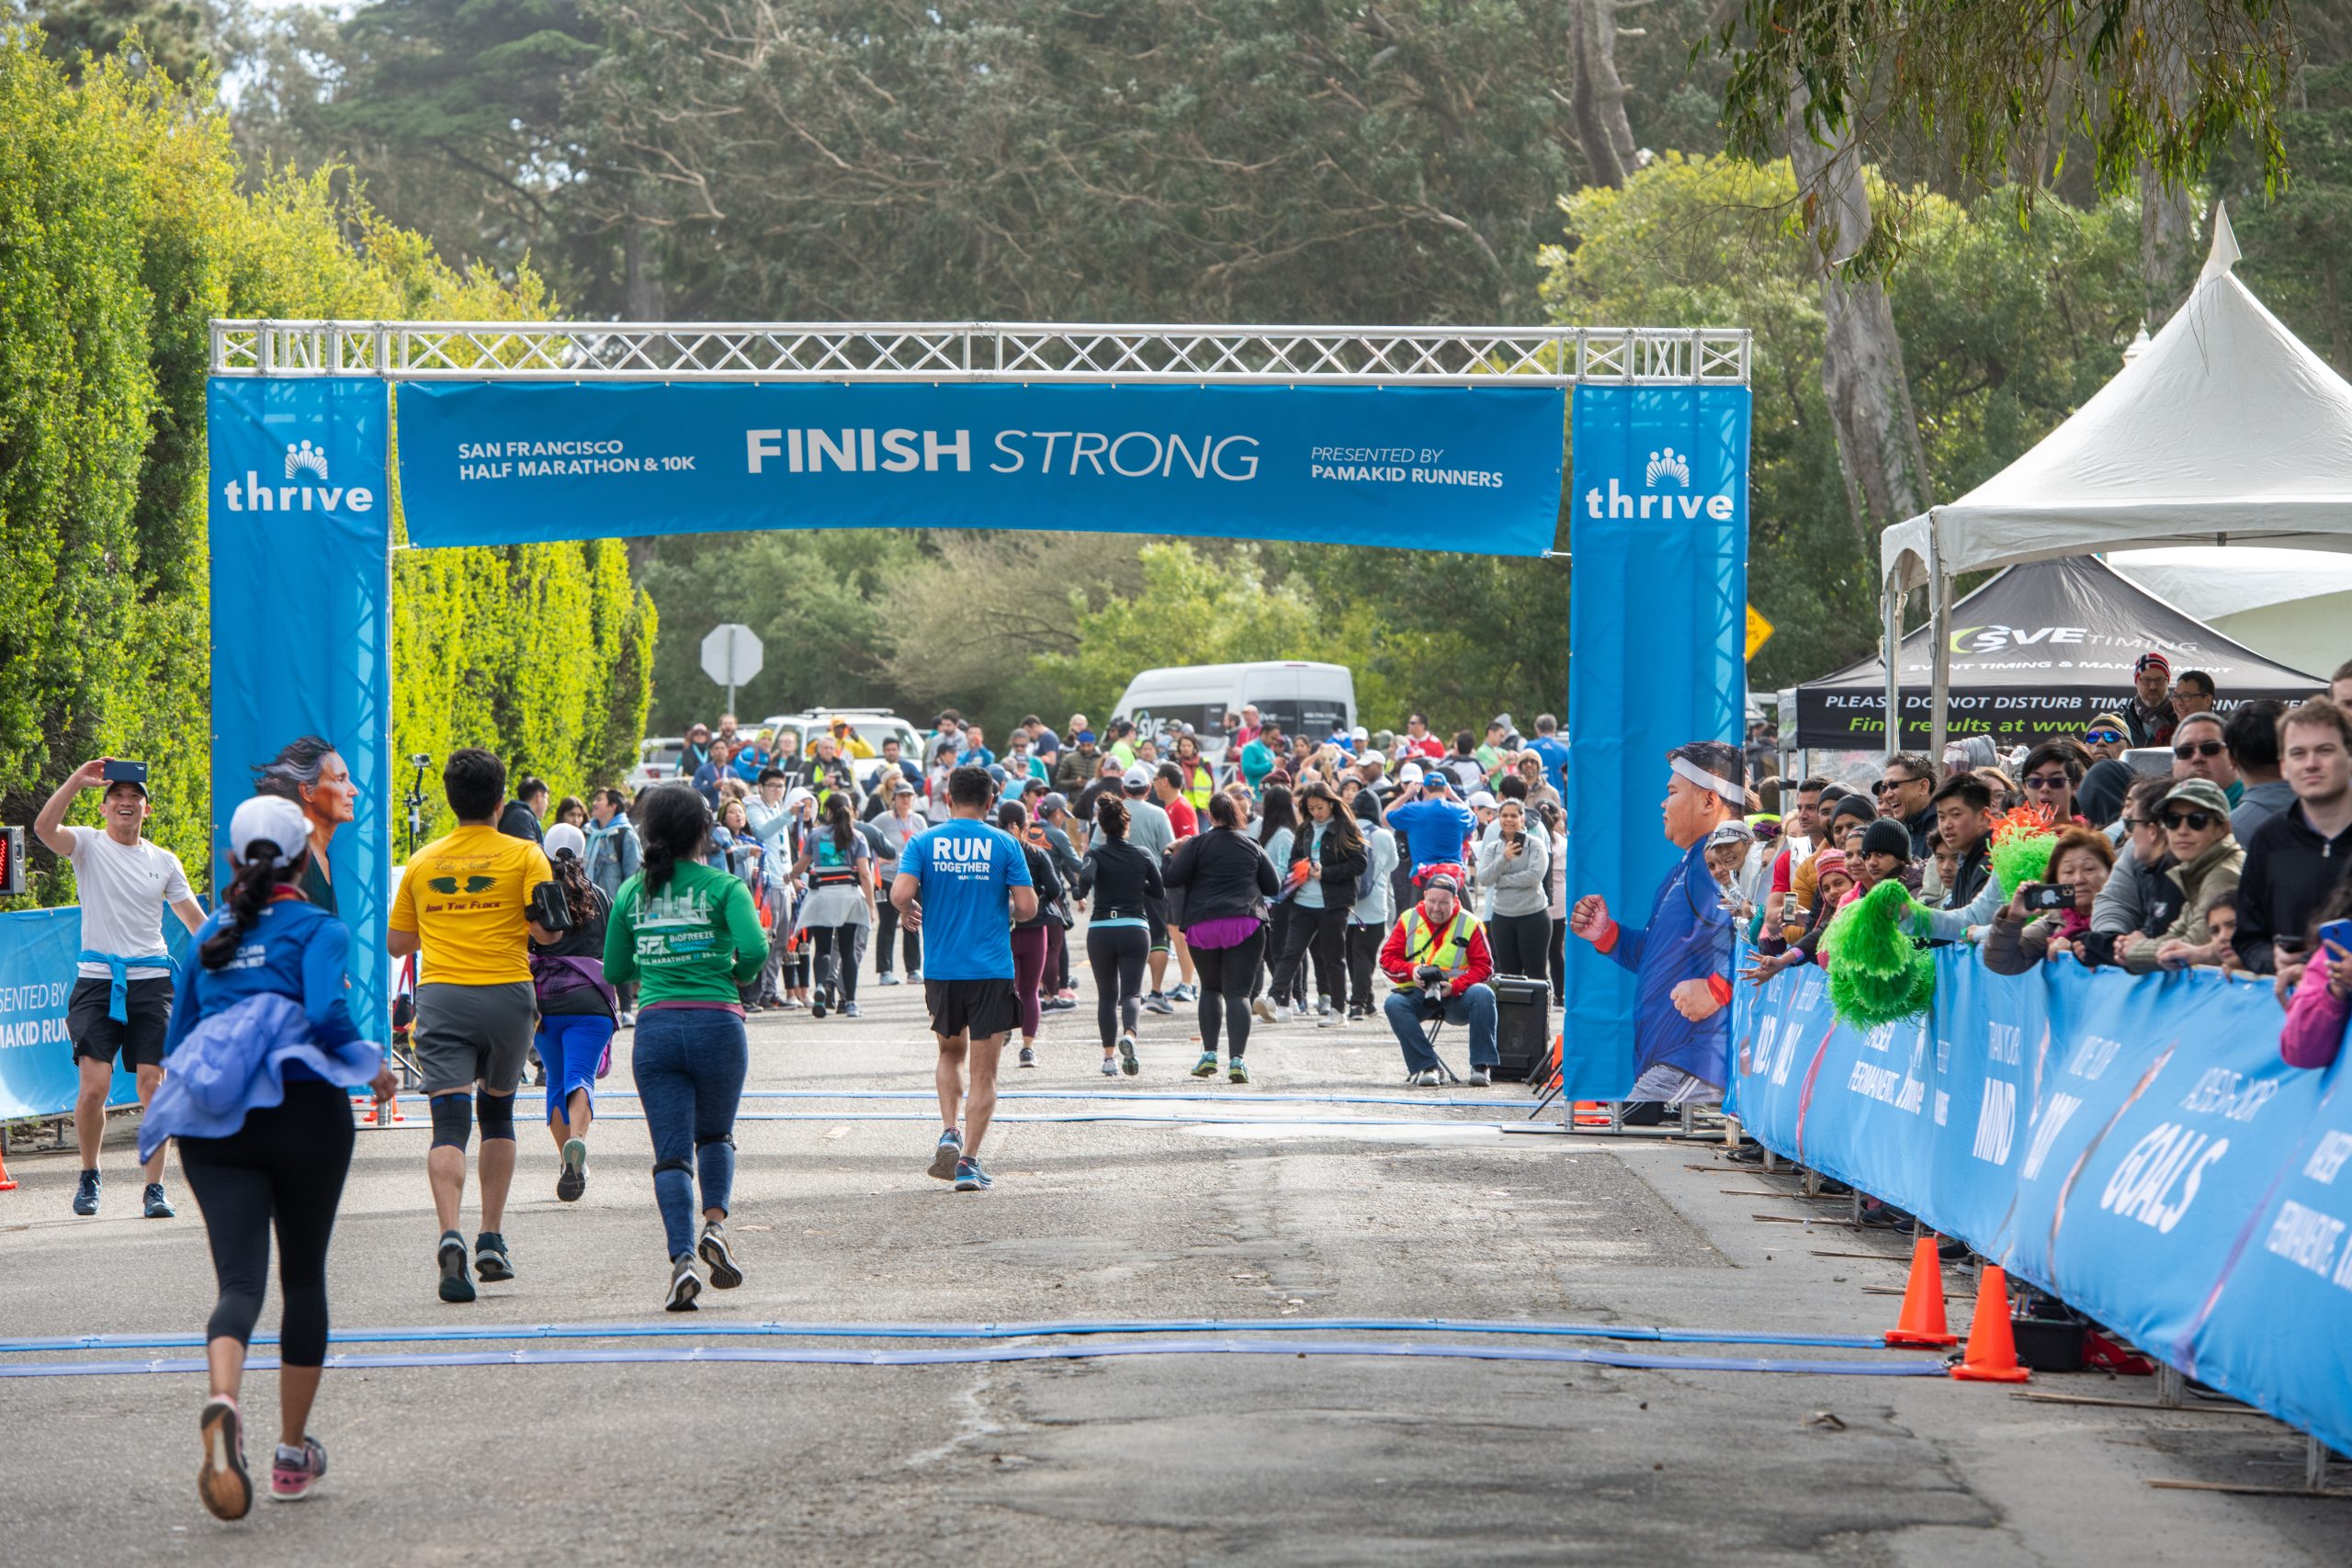 San Francisco Half Marathon Returns for its 39th Year as Kaiser